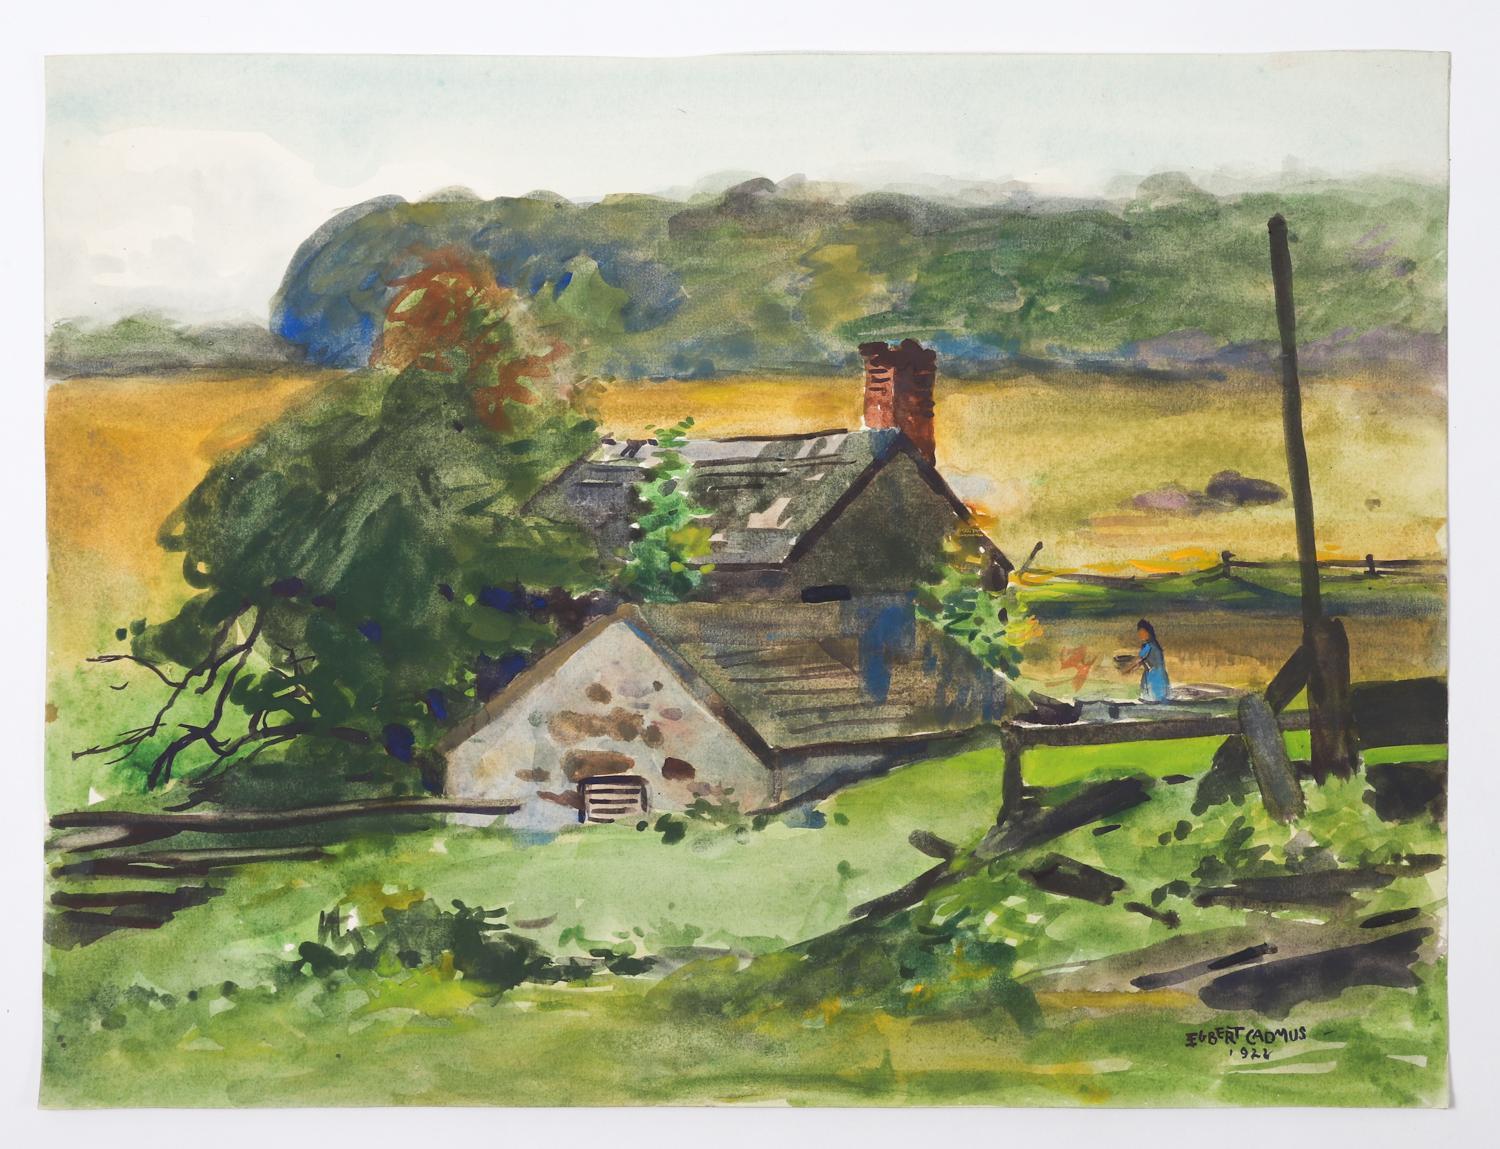 Aquarelle sur papier d'Egbert Cadmus (américain, 1868-1939) représentant un paysage de ferme de Nouvelle-Angleterre.  Signé et daté 1922 en bas à droite.  Aquarelliste accompli, surtout connu comme le père de l'artiste Paul Cadmus.  Il est devenu